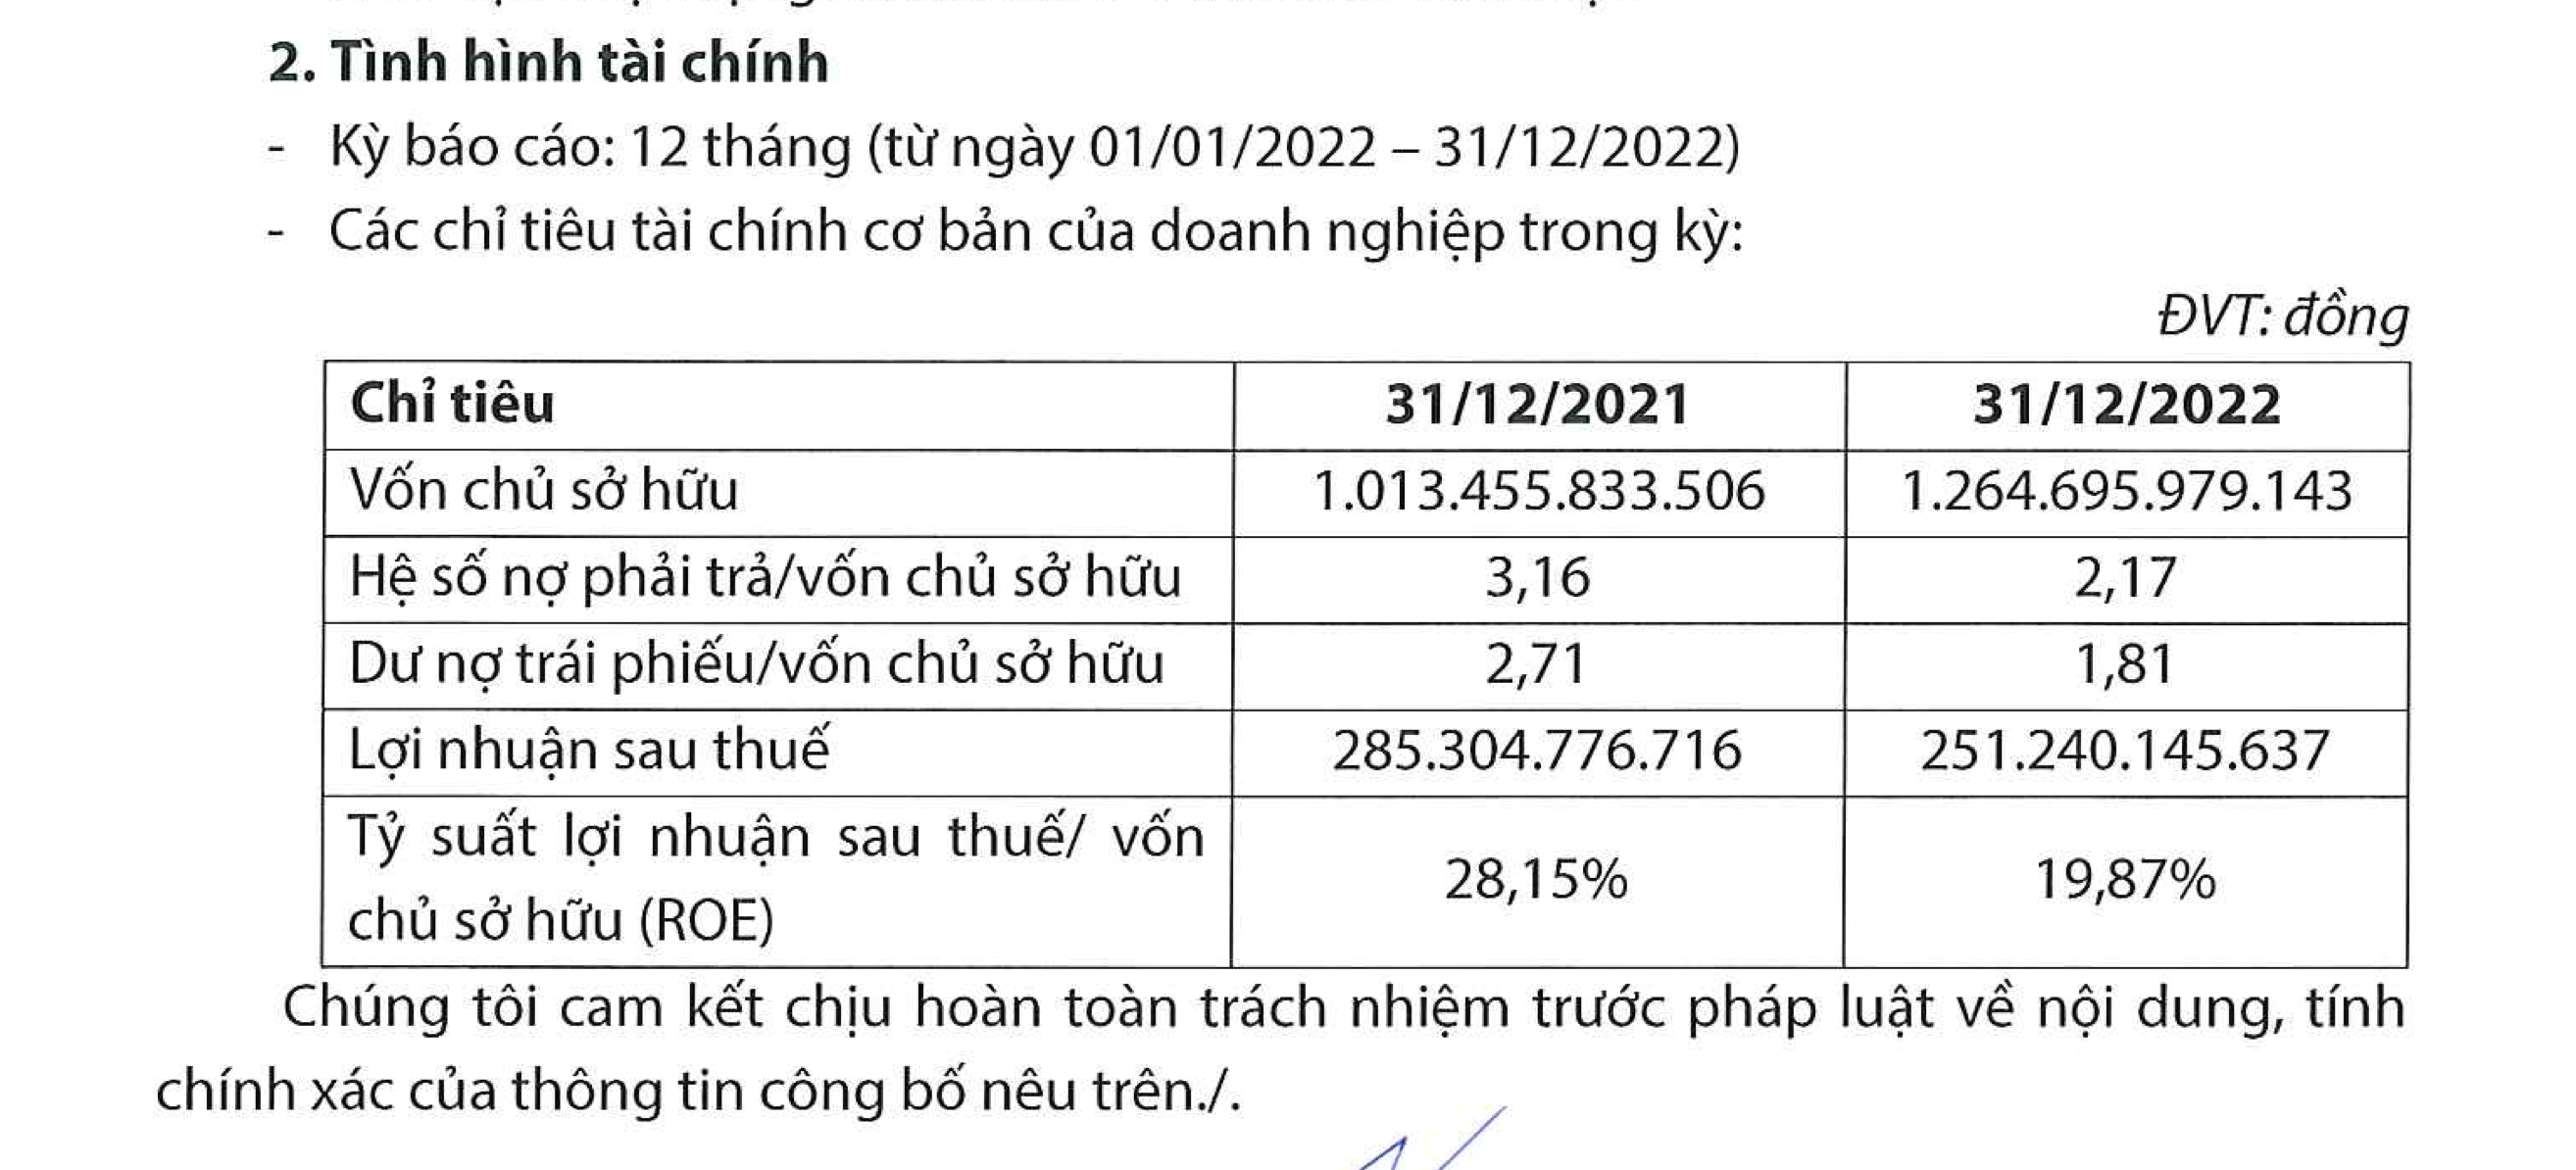 Báo cáo về kết quả kinh doanh Điện mặt trời Trung Nam năm 2022. Ảnh: Chụp màn hình.